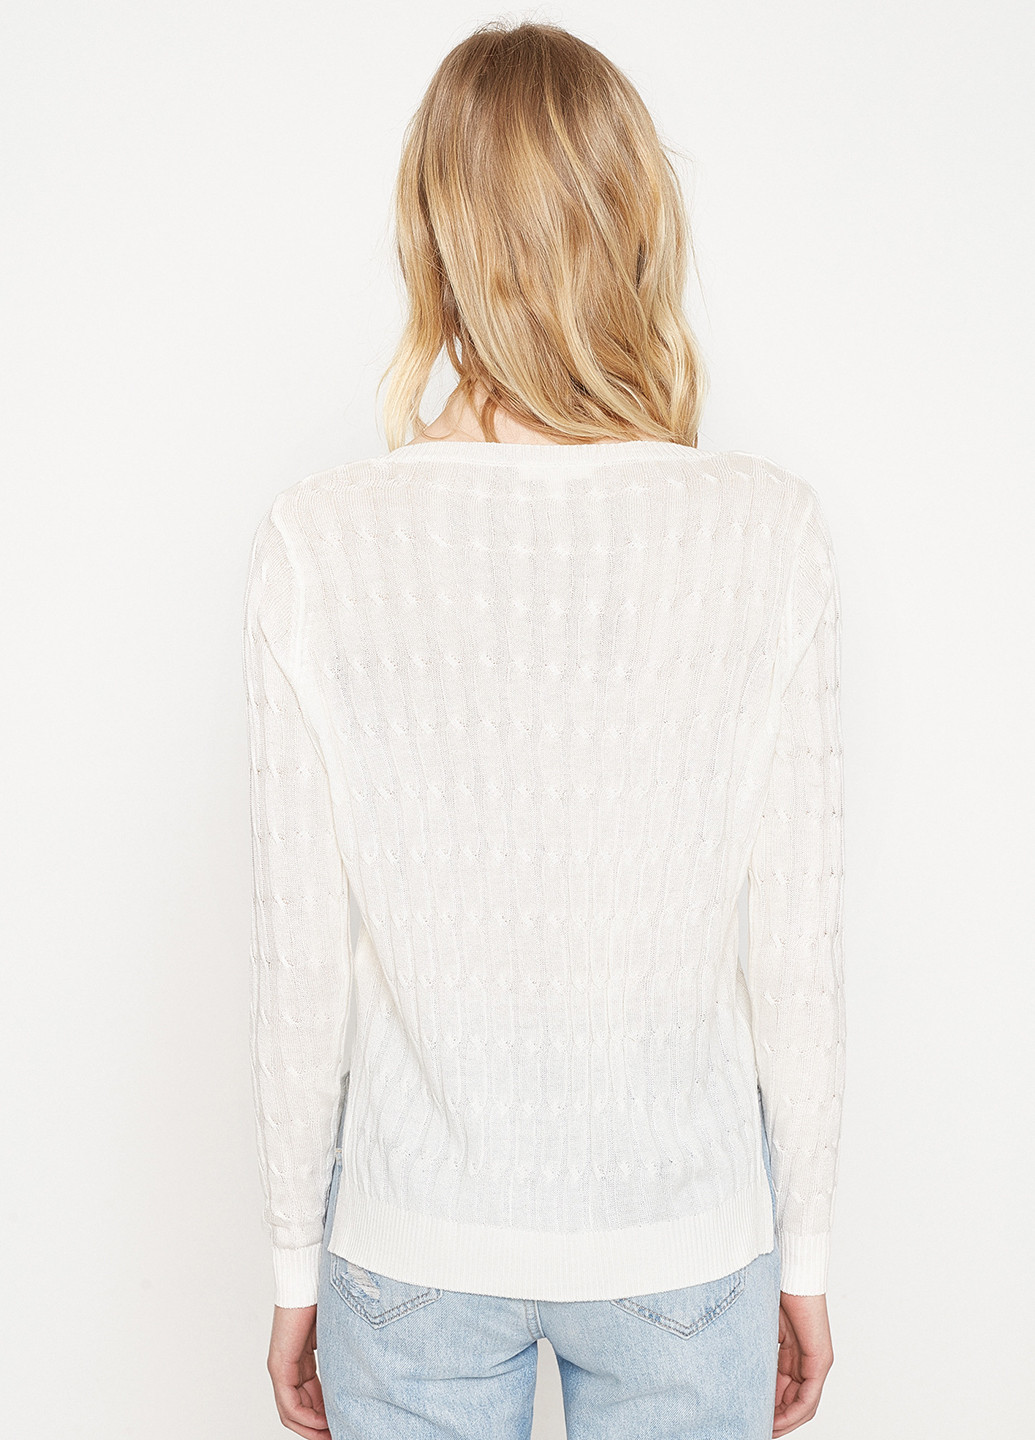 Молочный демисезонный пуловер пуловер KOTON